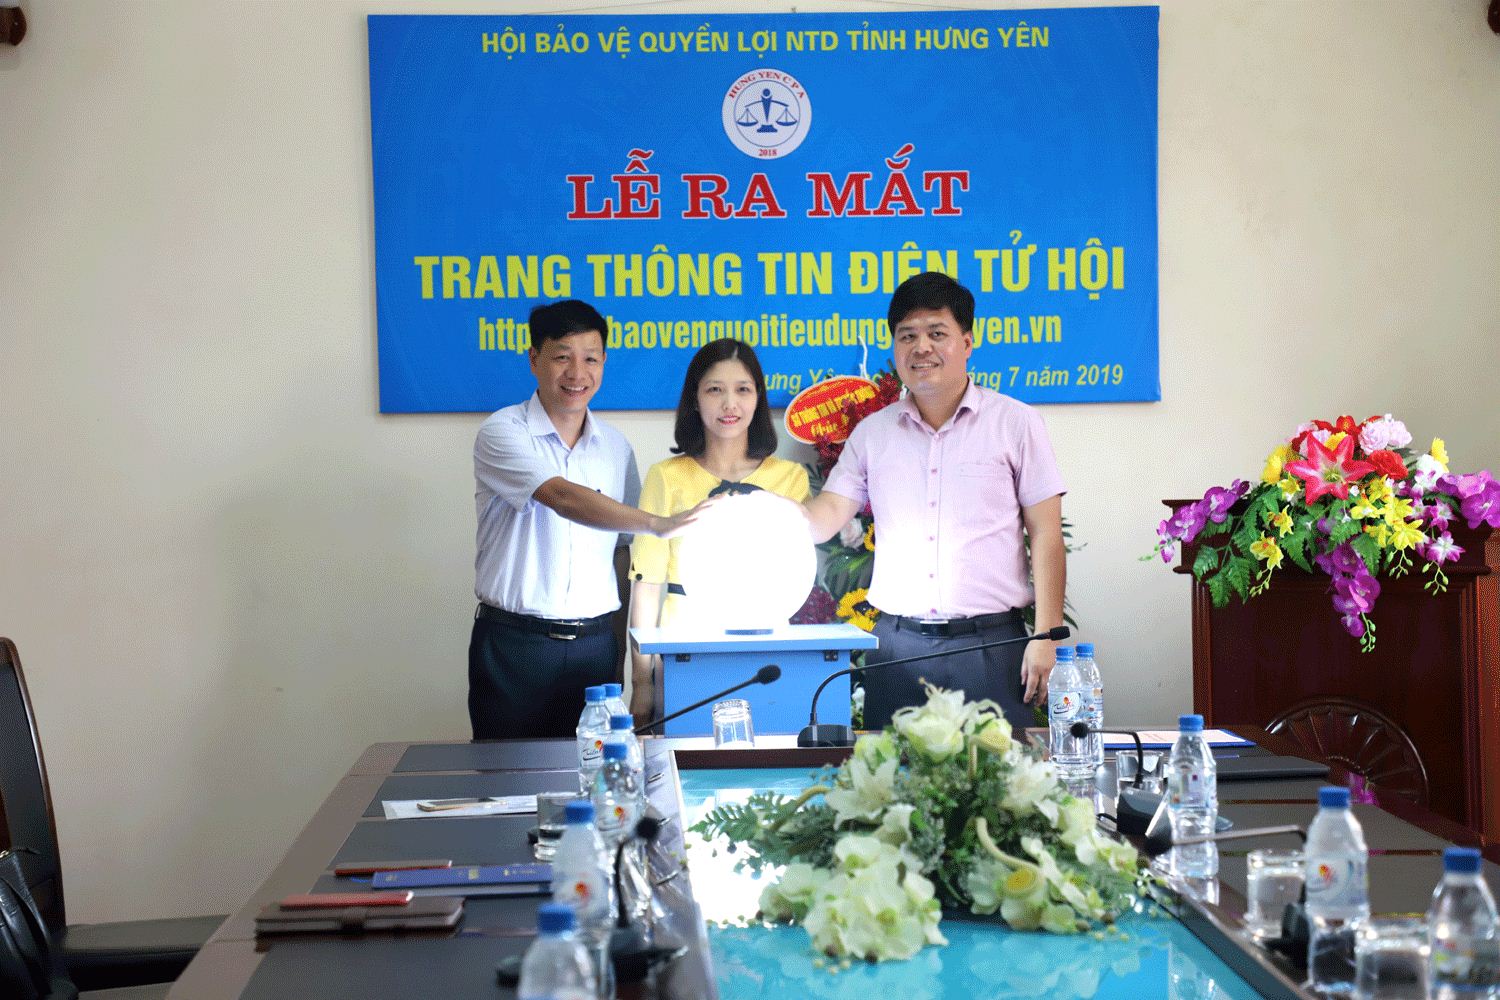 VNPT tặng Website Hội Bảo vệ người tiêu dùng cho tỉnh Hưng Yên 